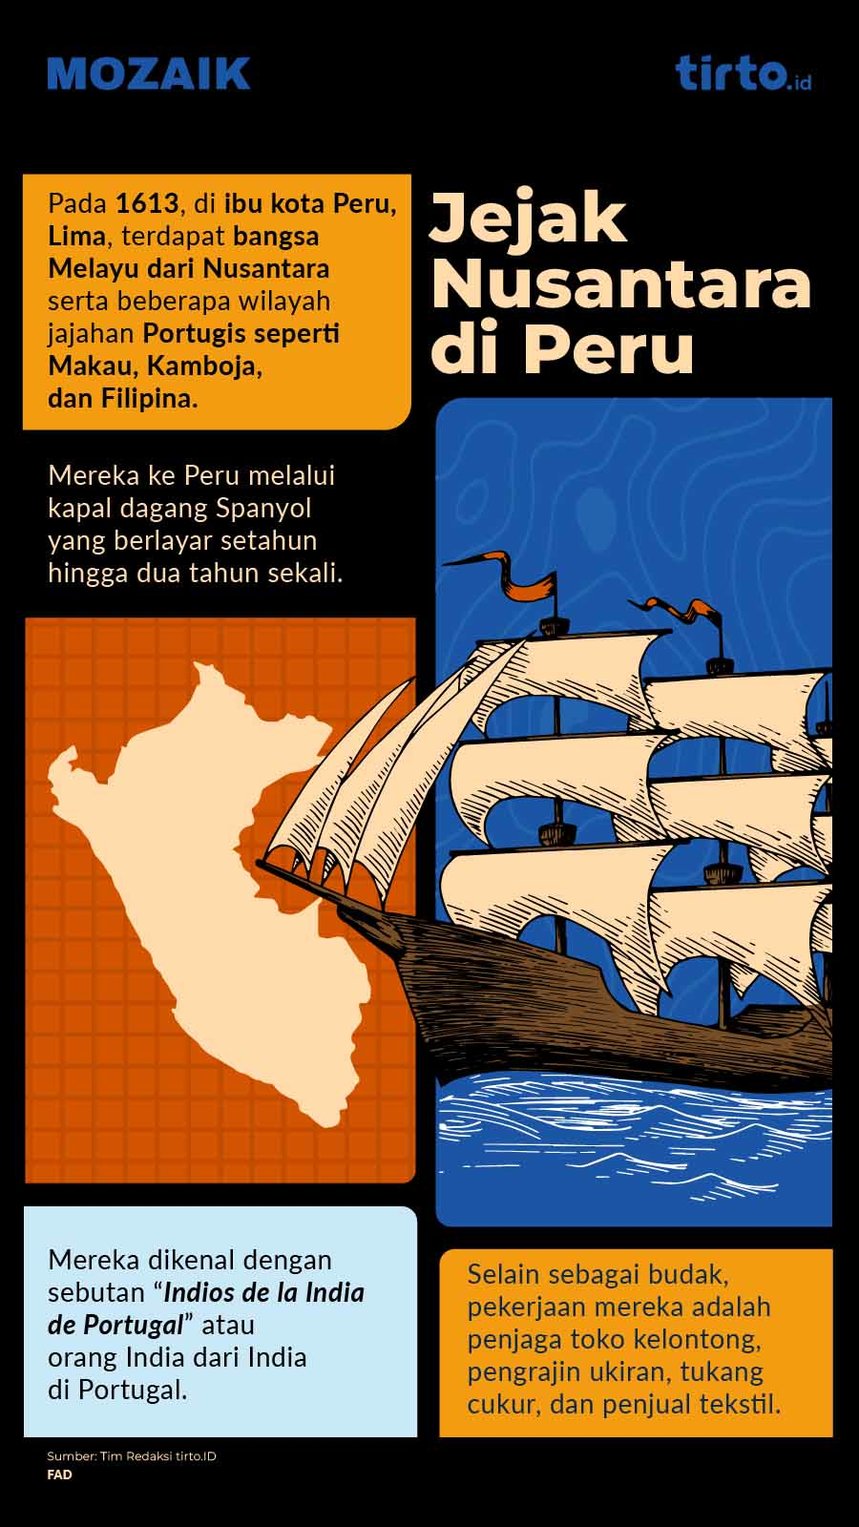 Infografik Mozaik Jejak Nusantara di Peru